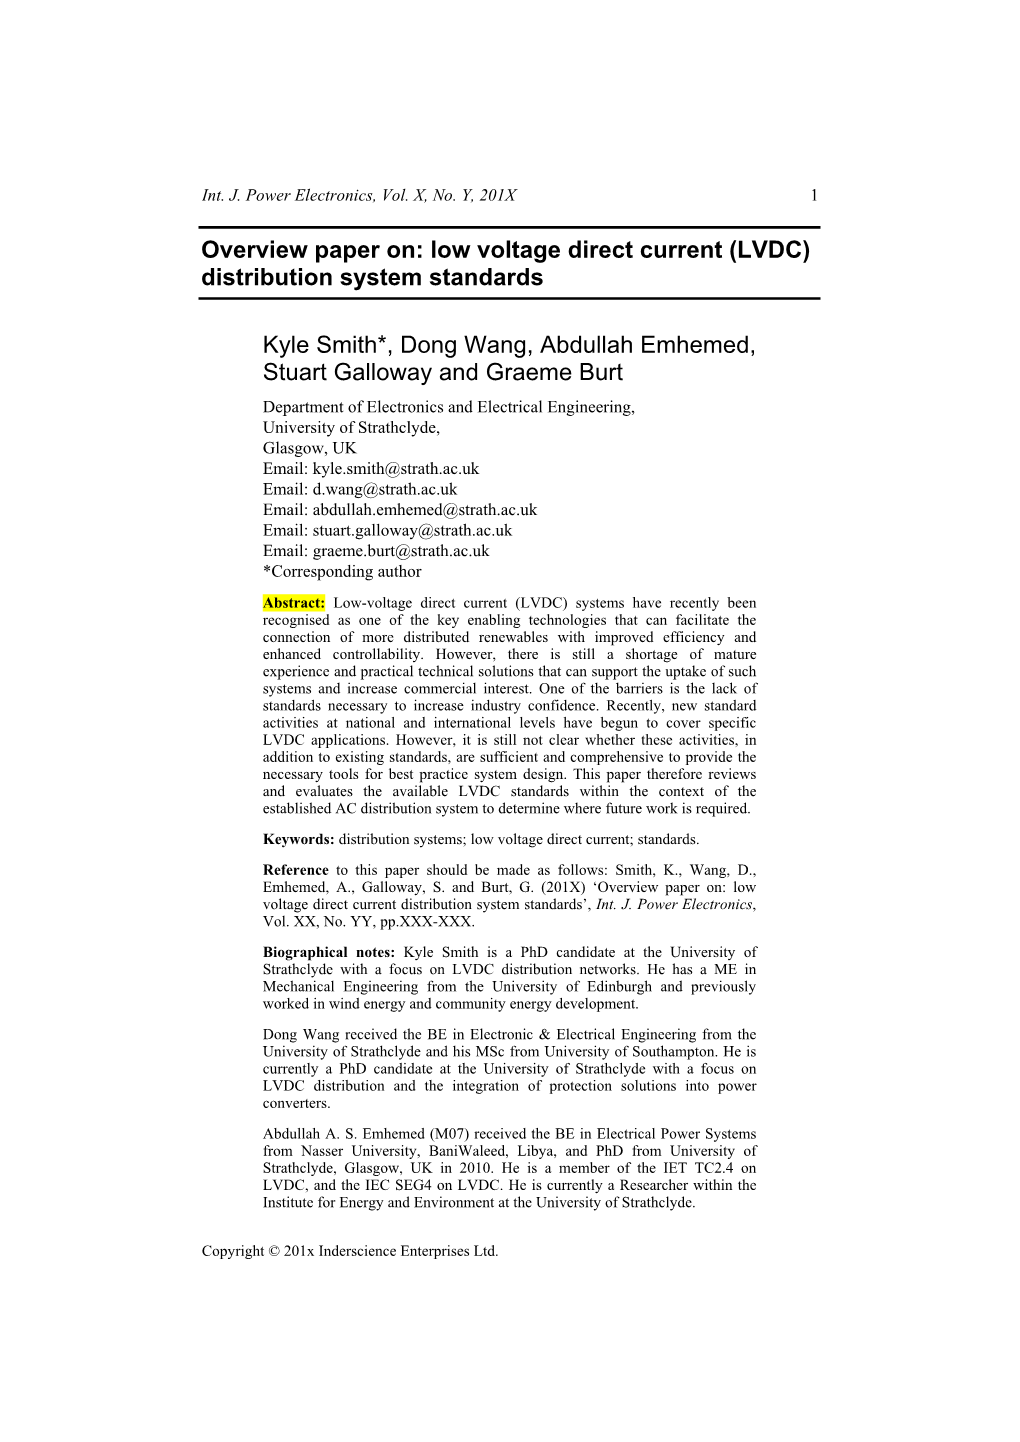 Low Voltage Direct Current (LVDC) Distribution System Standards